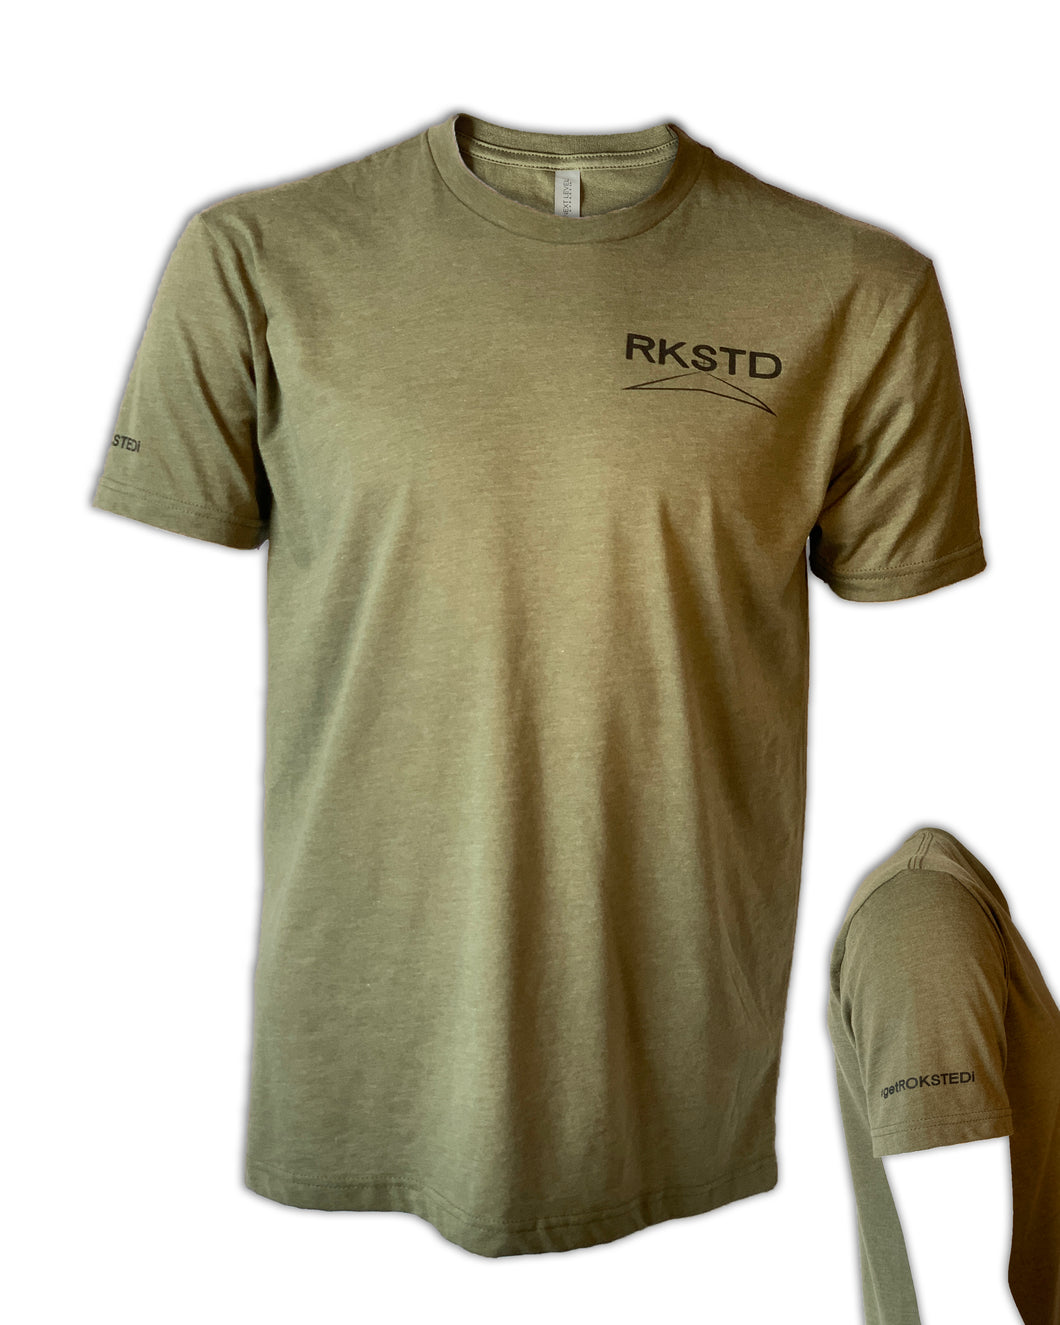 RKSTD T-Shirt w/ #getROKSTEDi